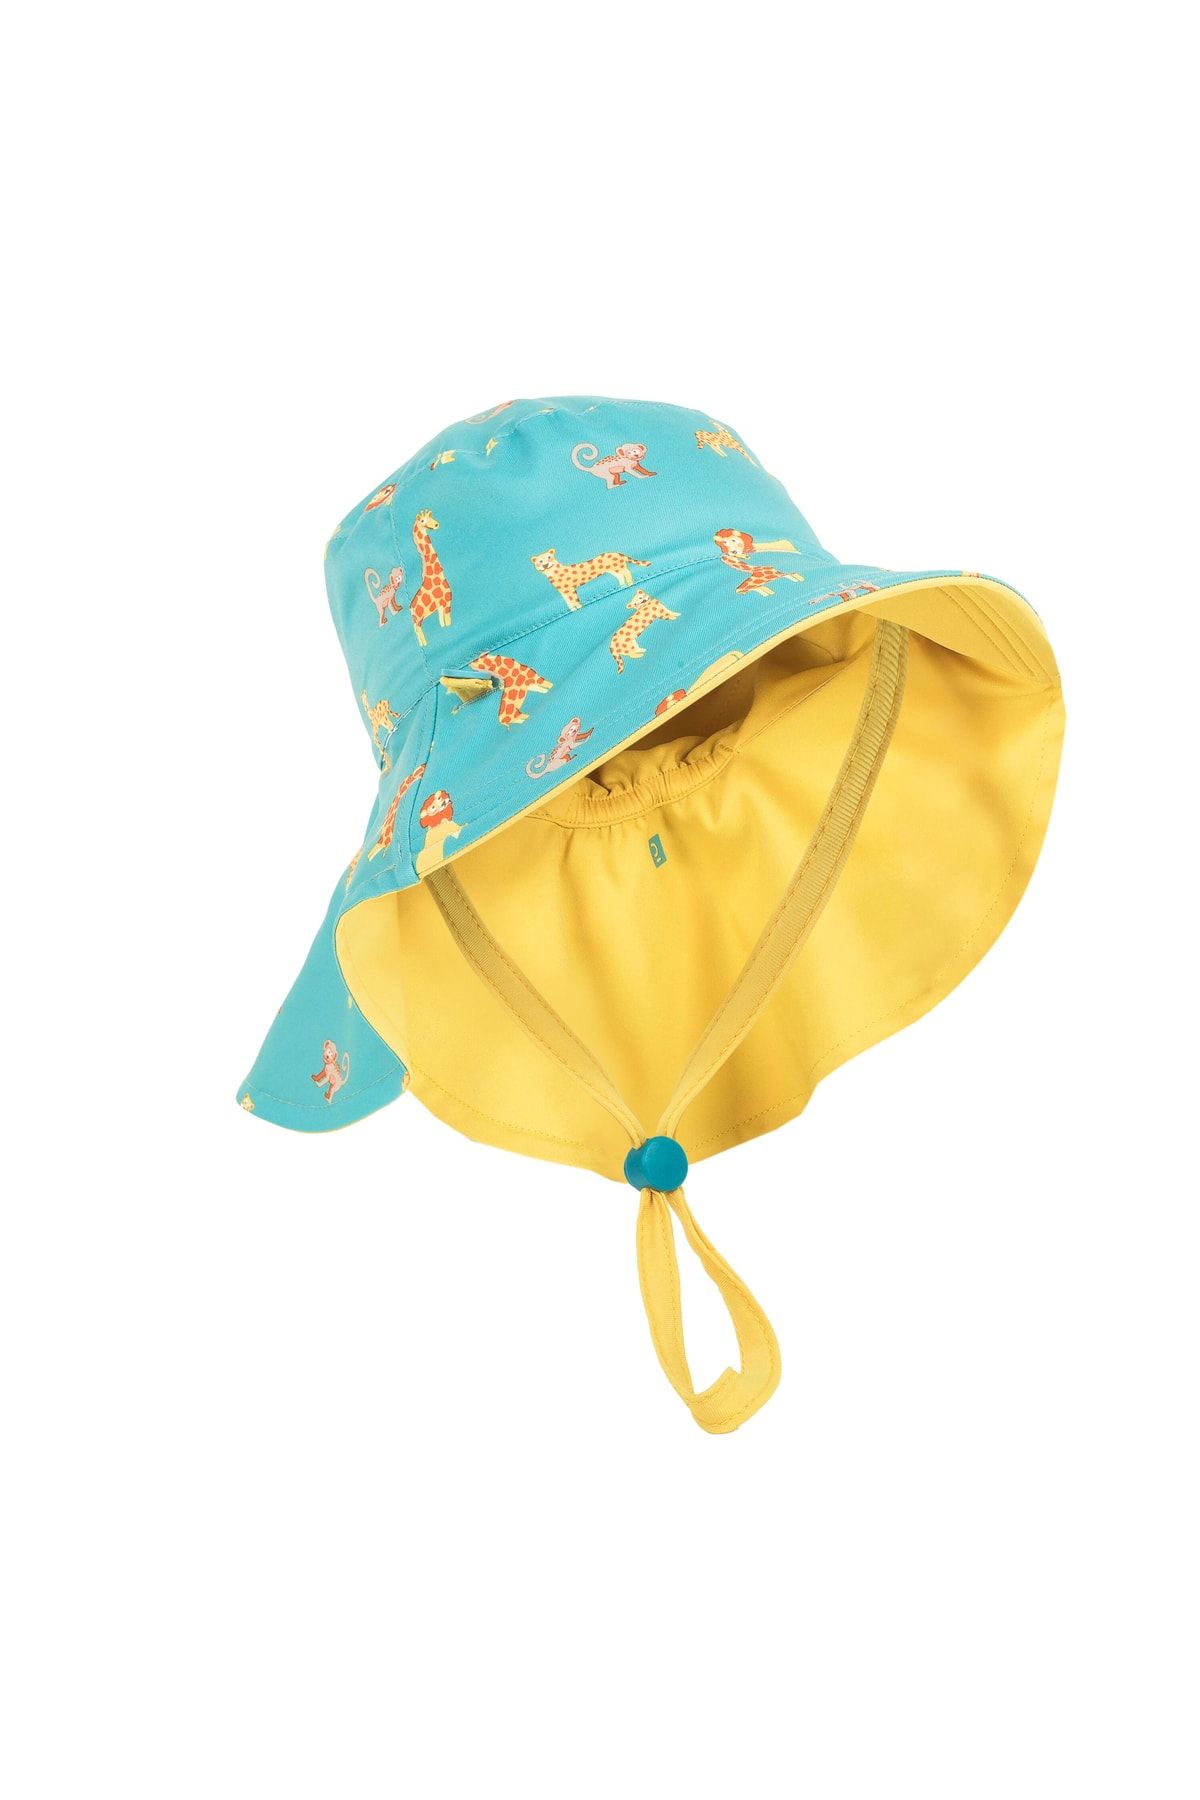 Decathlon Nabaıjı Bebek Uv Korumalı Şapka - Sarı / Mavi / Savan Baskılı